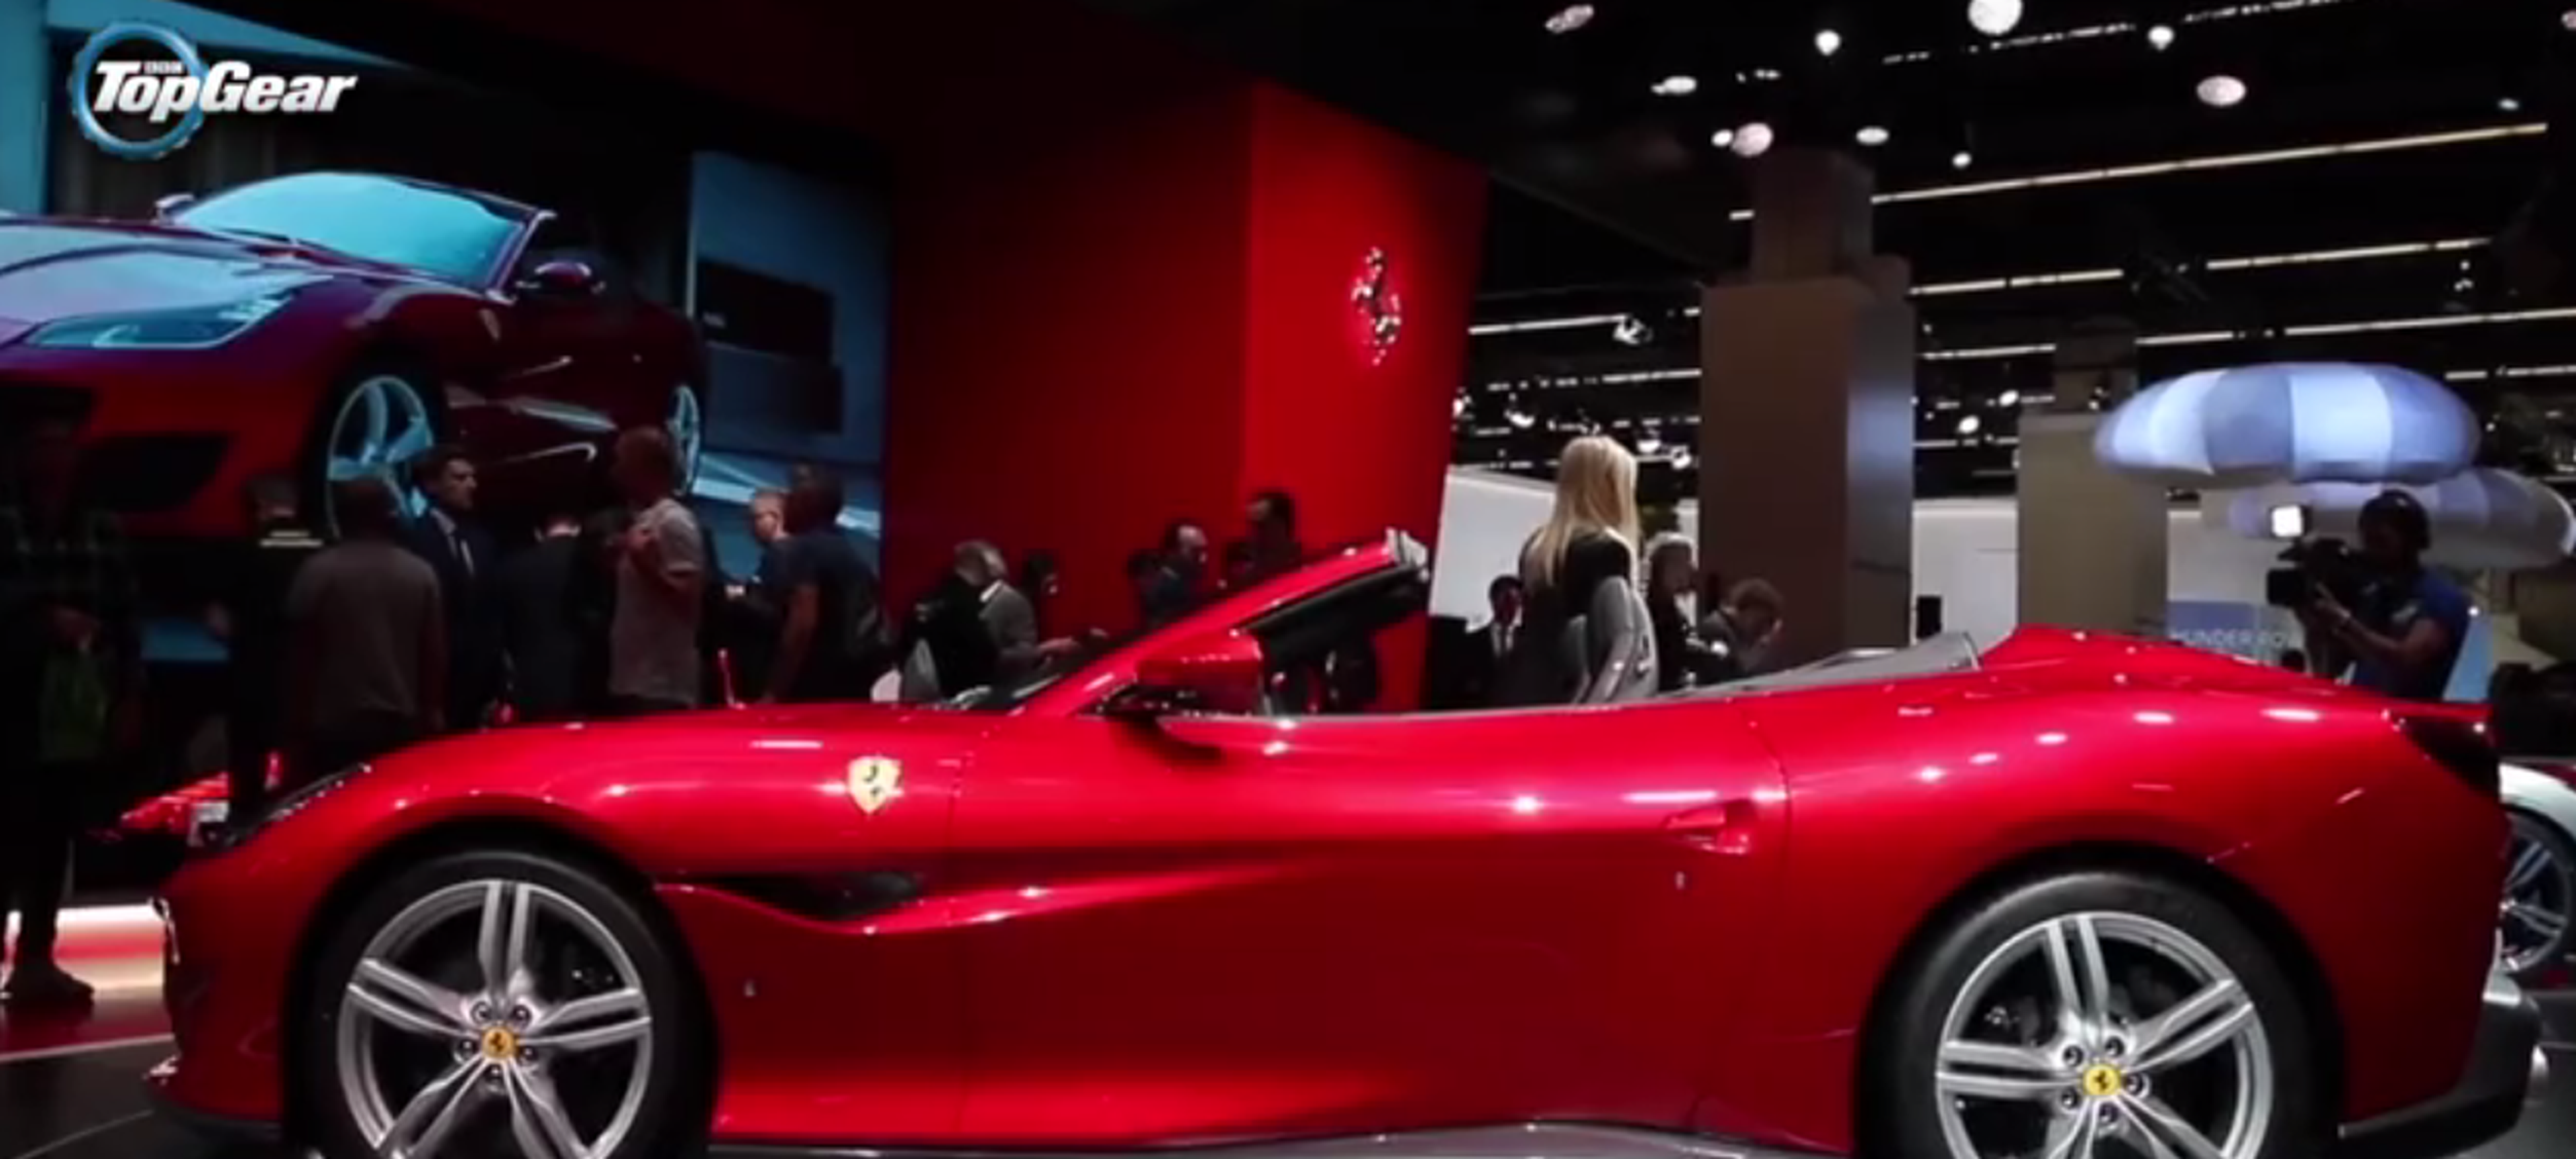 VIDEO: Así se presentó el Ferrari Portofino en el Salón de Frankfurt 2017 [TG]